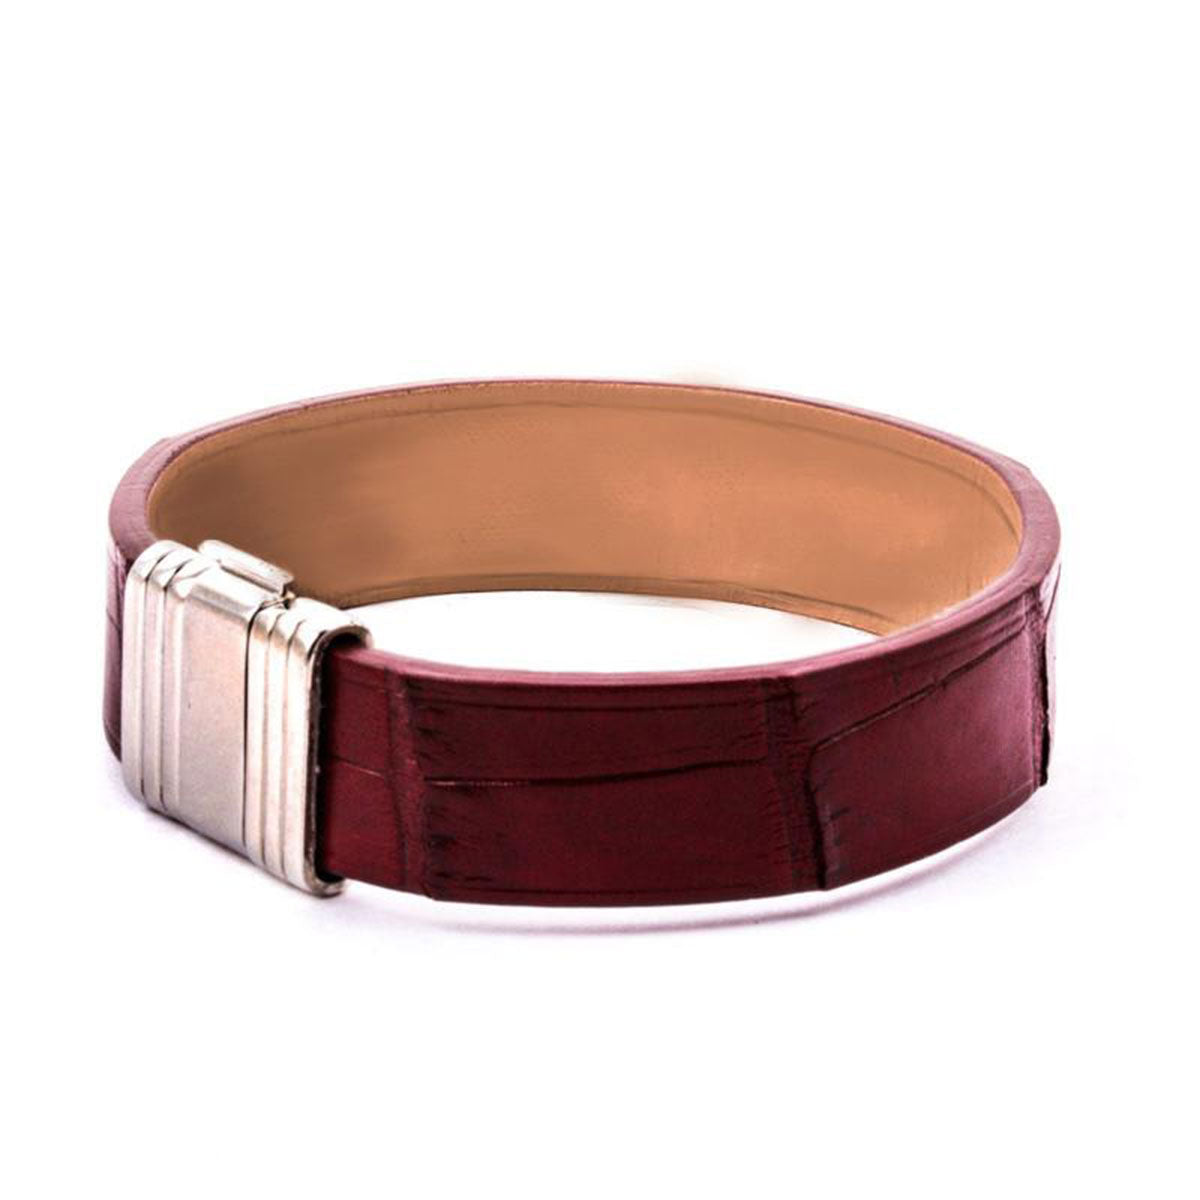 Bracelet Opéra - Bracelet ornemental cuir - Alligator - watch band leather strap - ABP Concept -